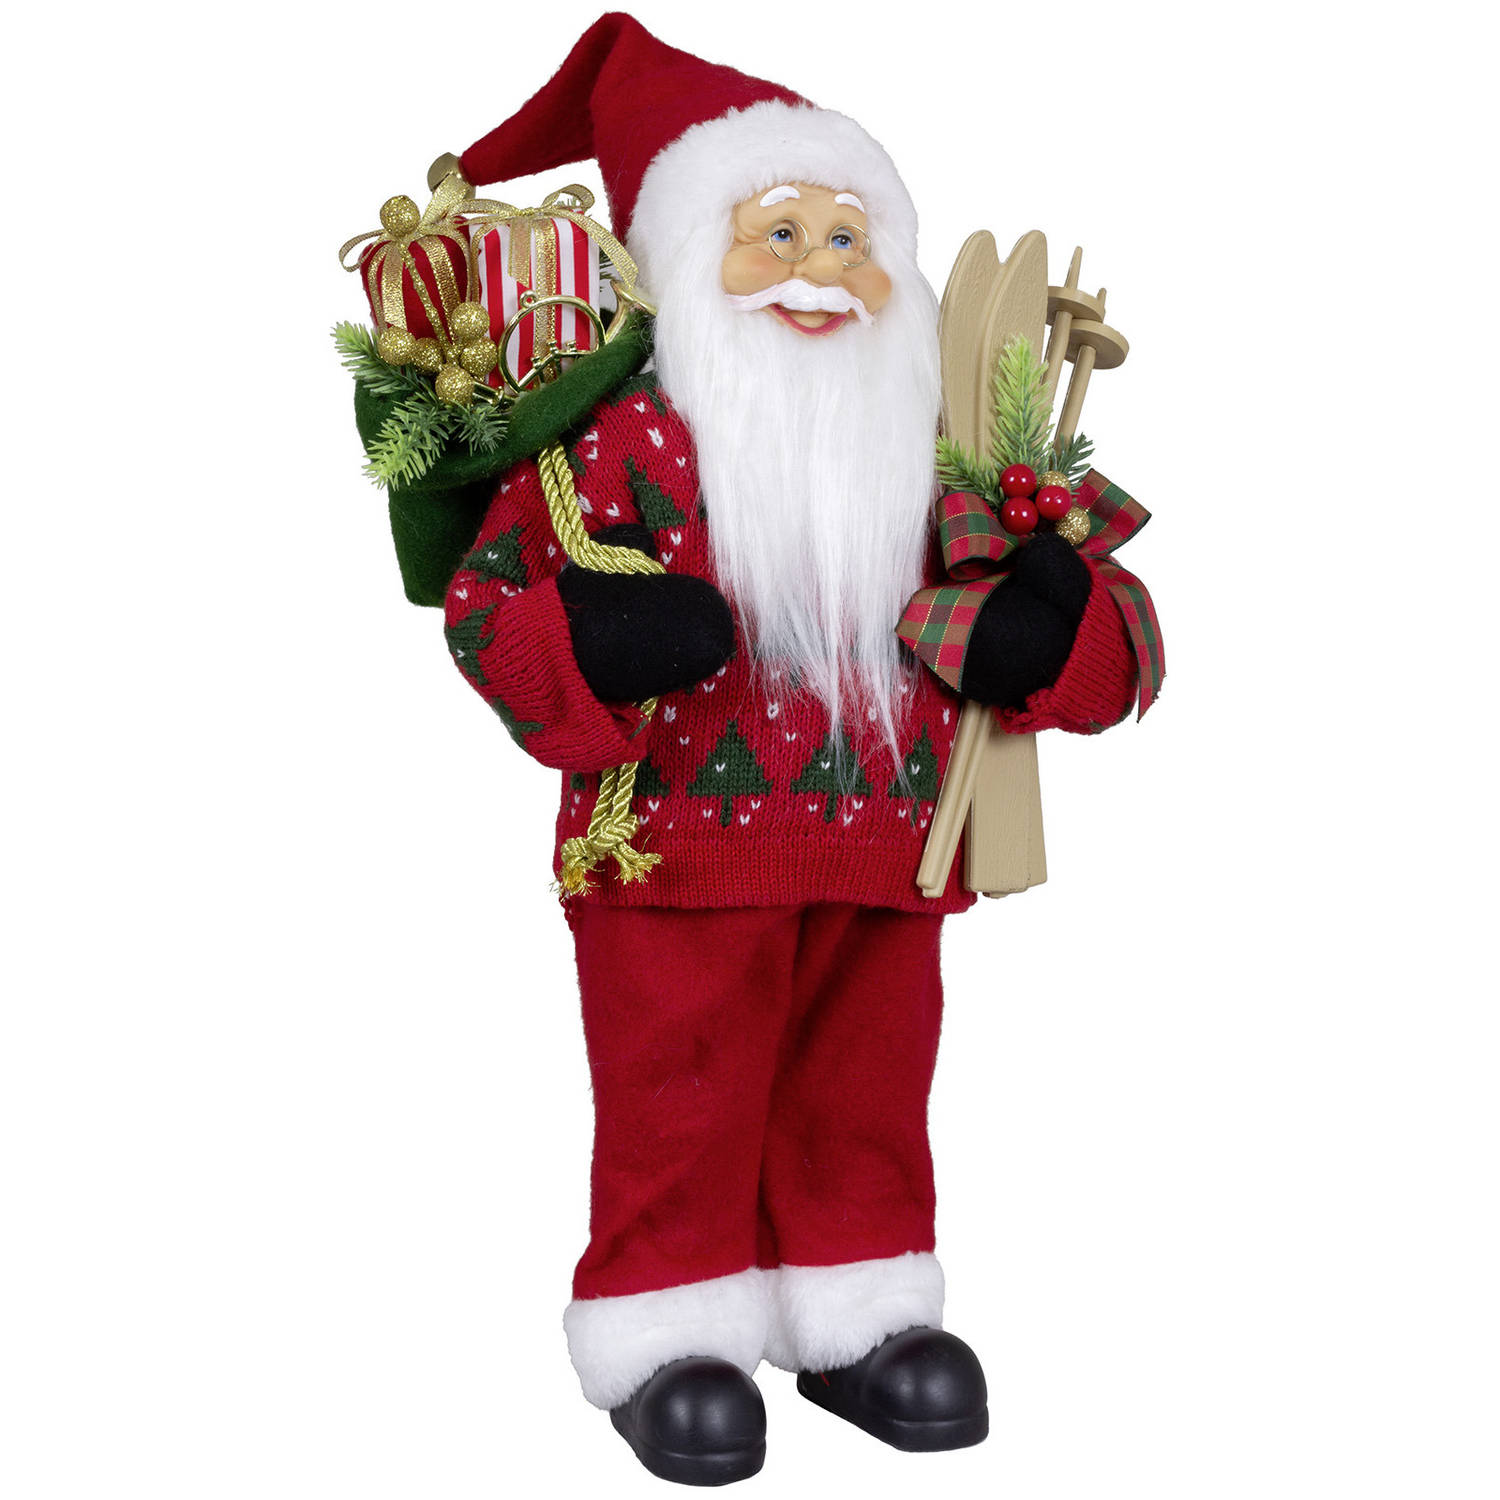 Kerstman decoratie pop - Martin - H45 cm - rood - staand - kerst beeld - kerst figuur